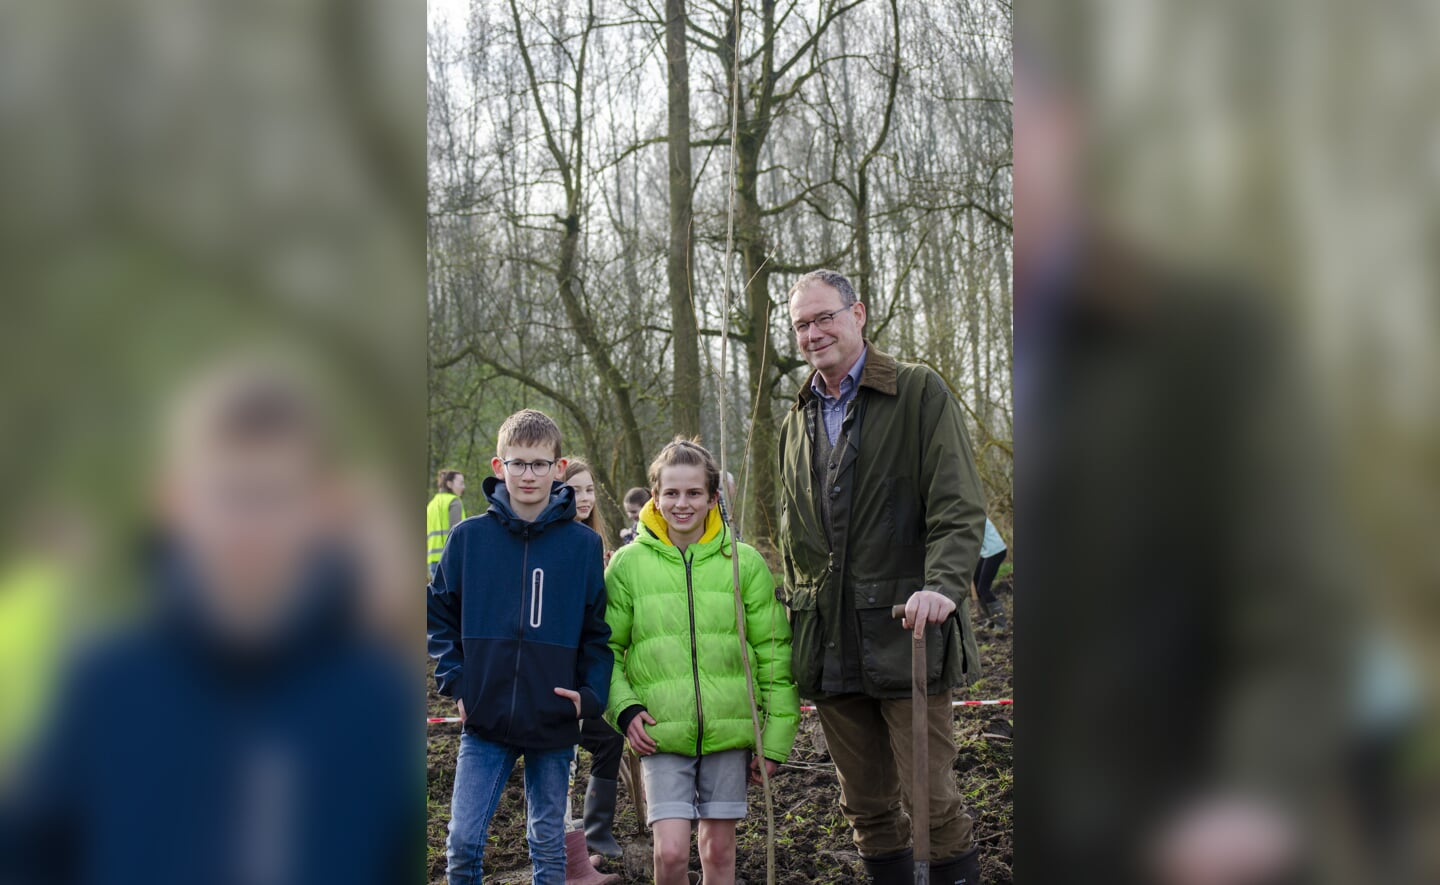 Tijdens de Boomfeestdag werden op Onrooi in Liempde veel bomen geplant door leerlingen van basisschool De Oversteek. Dat deden zij samen met burgemeester Ronald van Meygaarden.